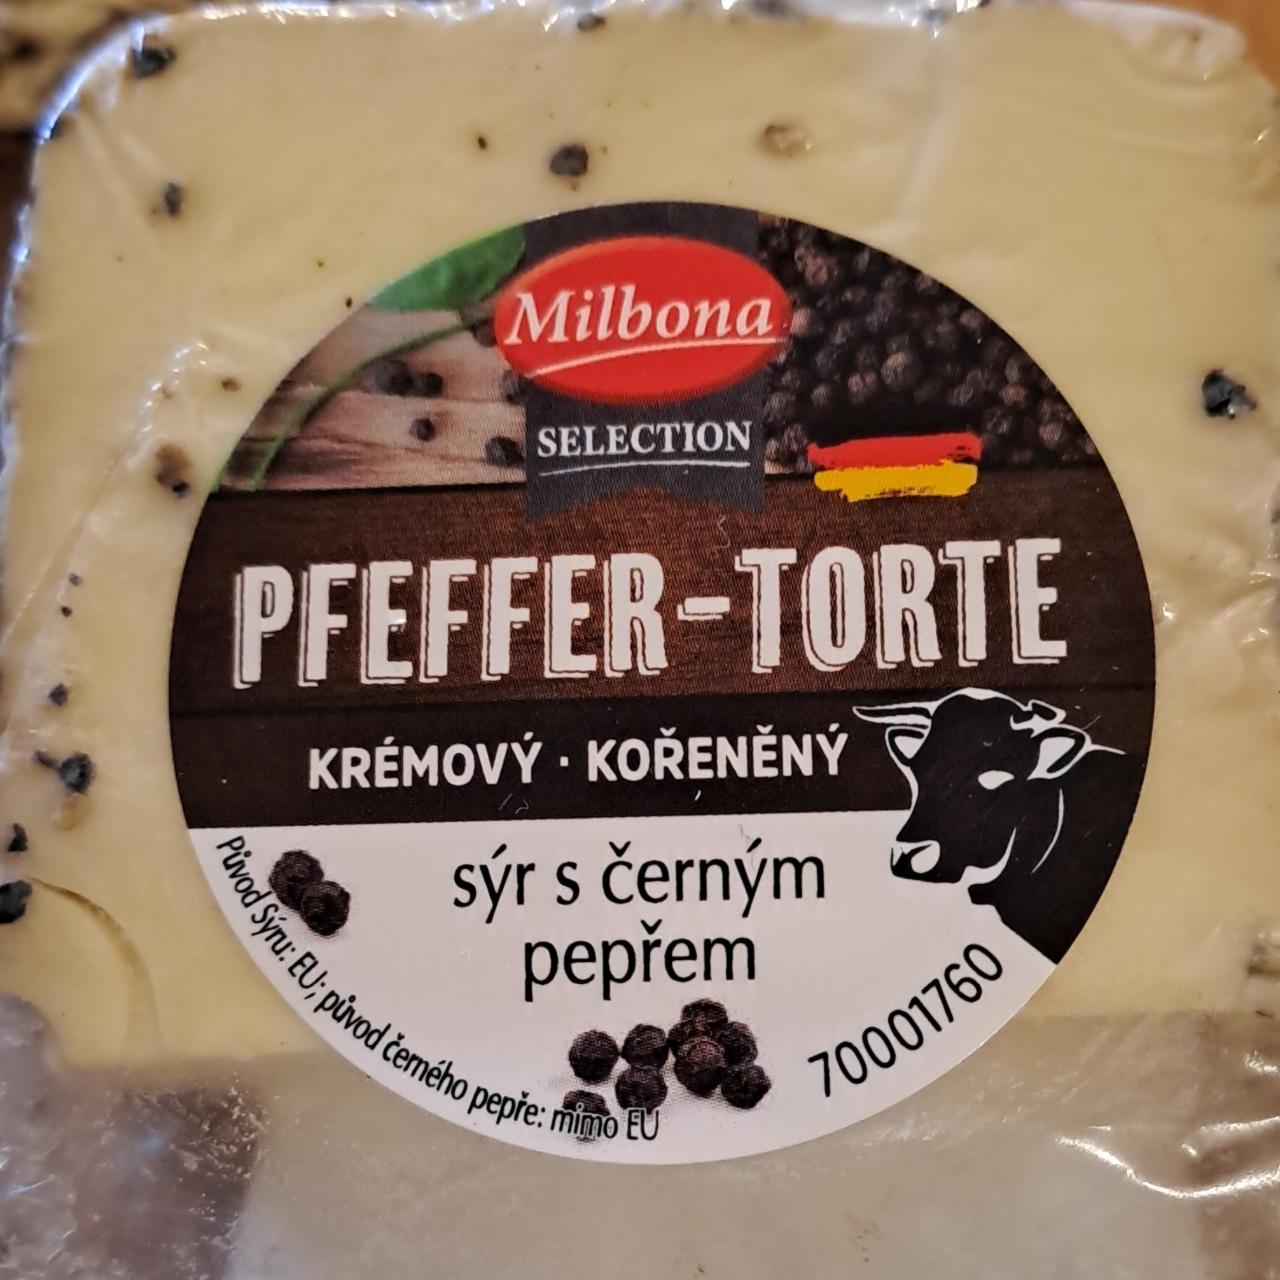 Fotografie - Pffeffer torte krémový kořeněný tavený sýr s černým pepřem Milbona